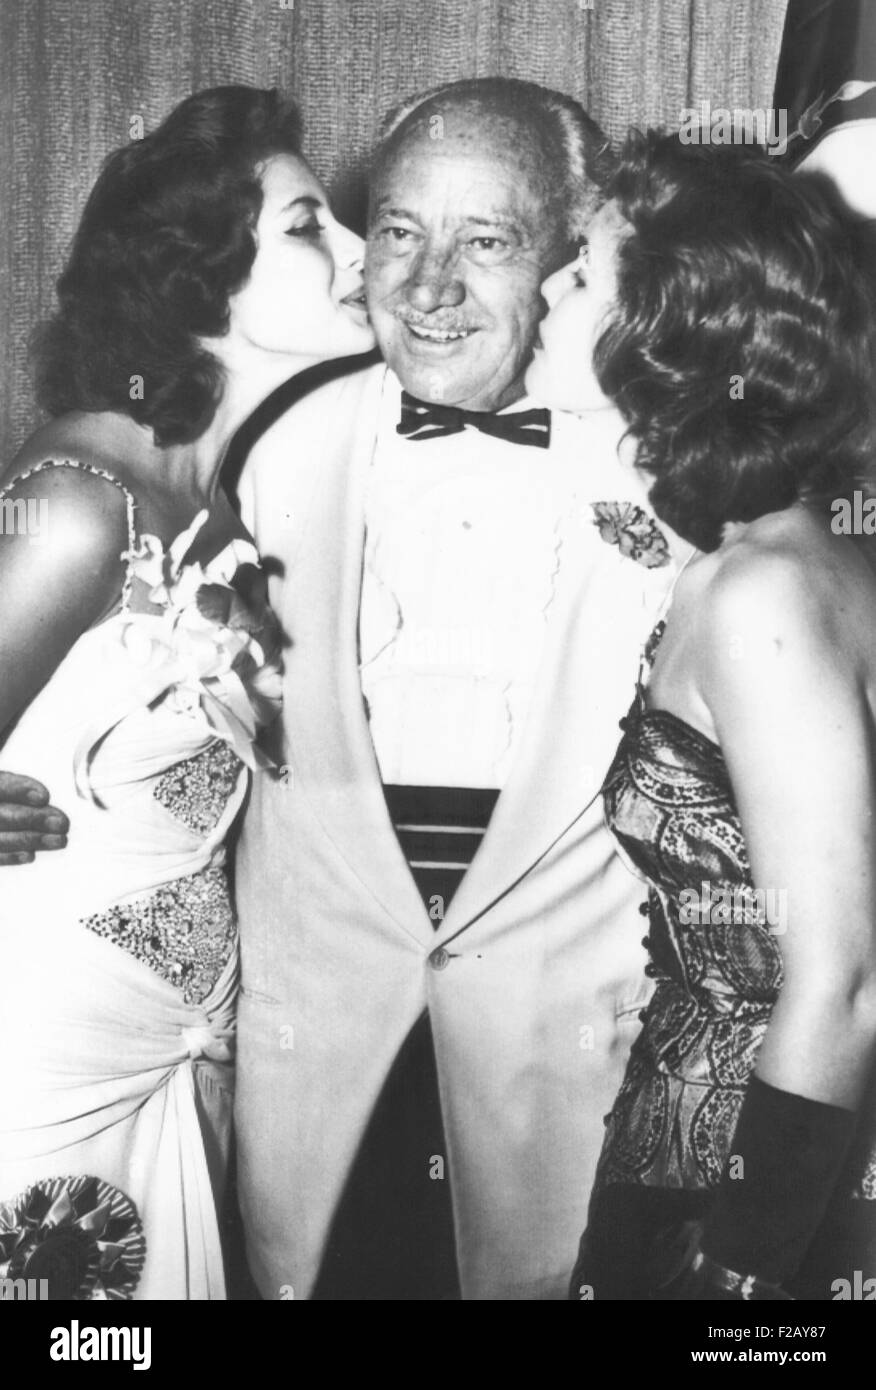 Conrad Hilton ist von Miss Universe Gladys Zender (links) und der Läufer sich geküsst. 22. Juli 1957. Hilton war Gastgeber einer Dinner-Party und Tanz in seinem Hotel für viele der Miss Universe Teilnehmer. (CSU 2015 9 859) Stockfoto